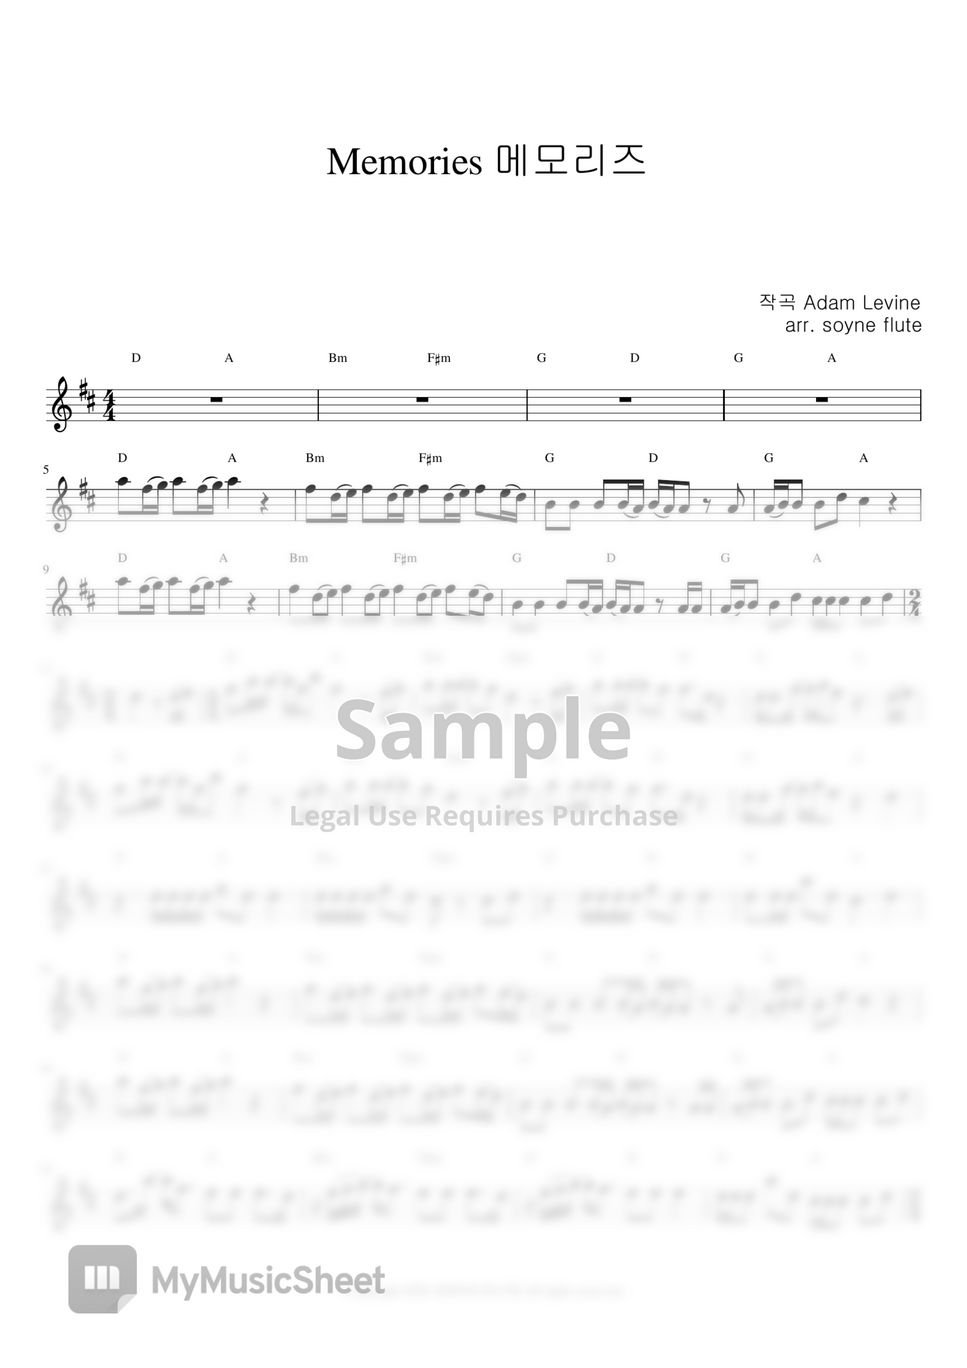 Maroon5 - Memories (Flute Sheet Music Easy) by sonye flute